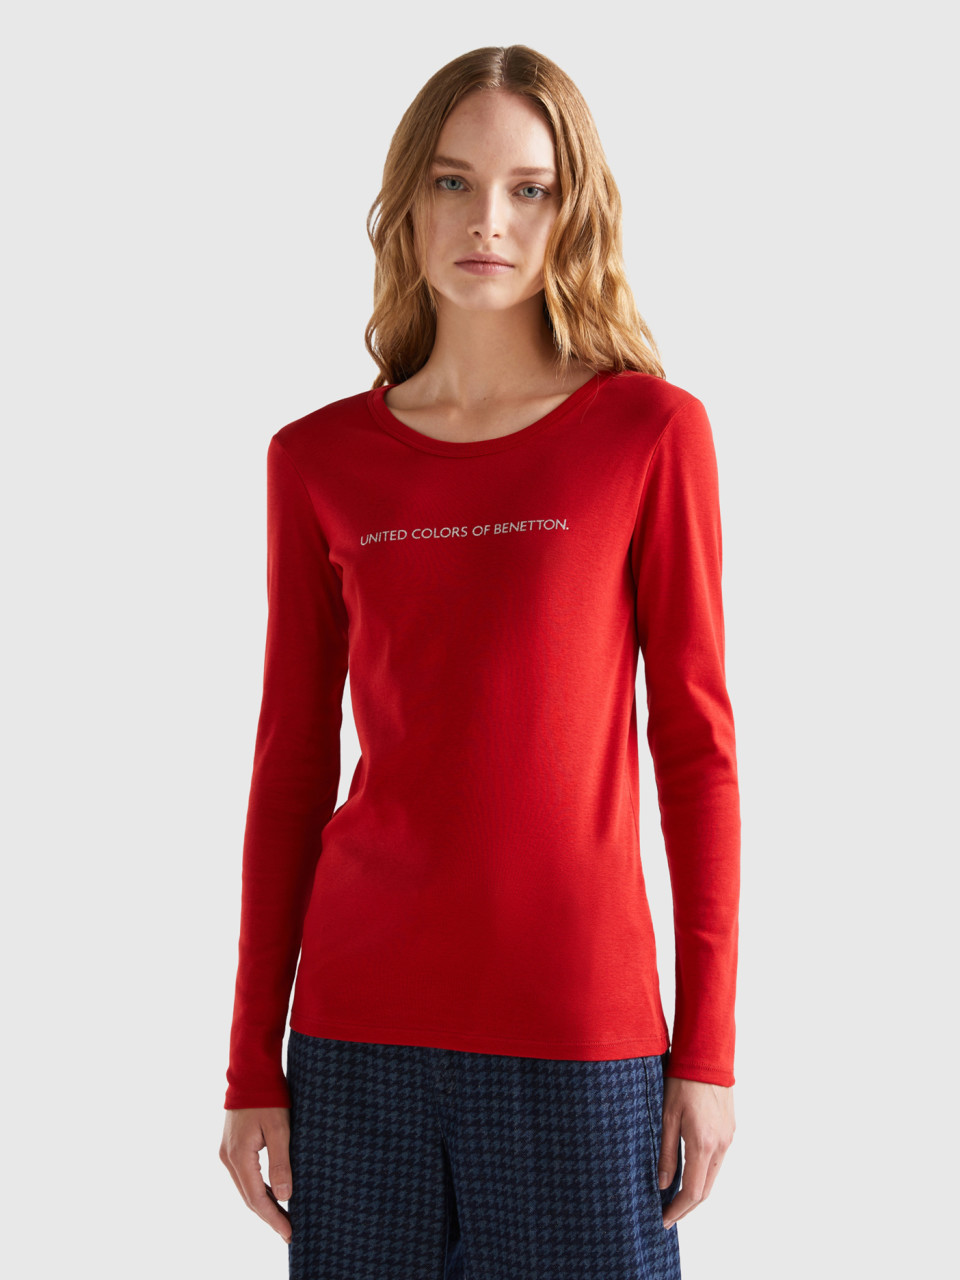 Benetton, Long Sleeve Red T-shirt, Red, Women